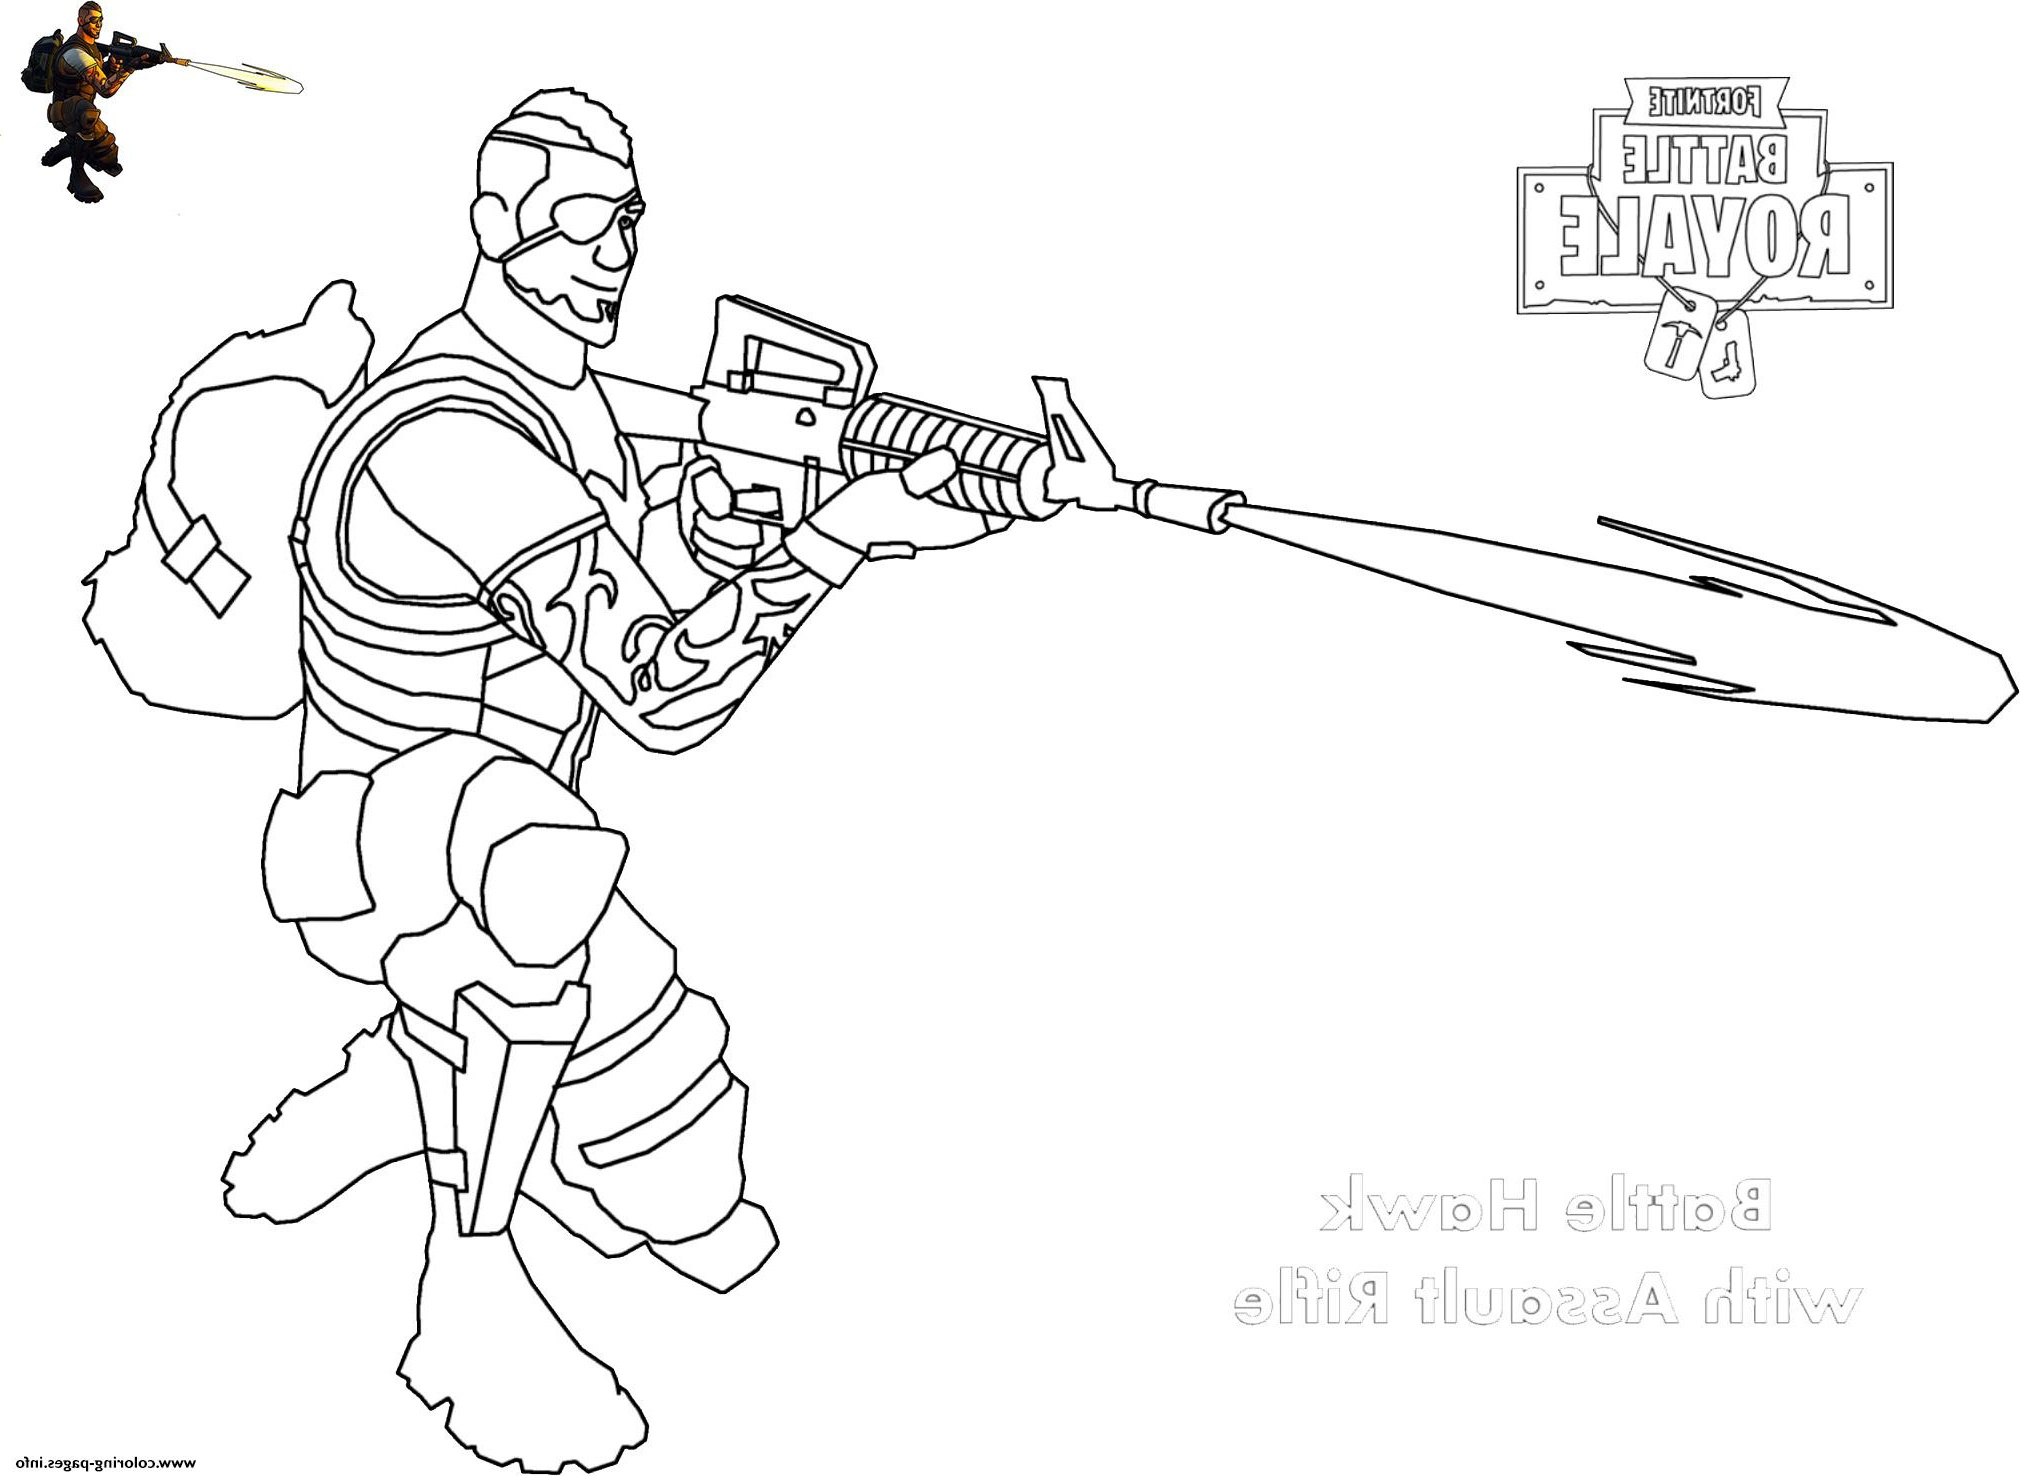 Dessin fortnite A Imprimer Inspirant Galerie assault Rifle Shot fortnite Coloring Pages Printable